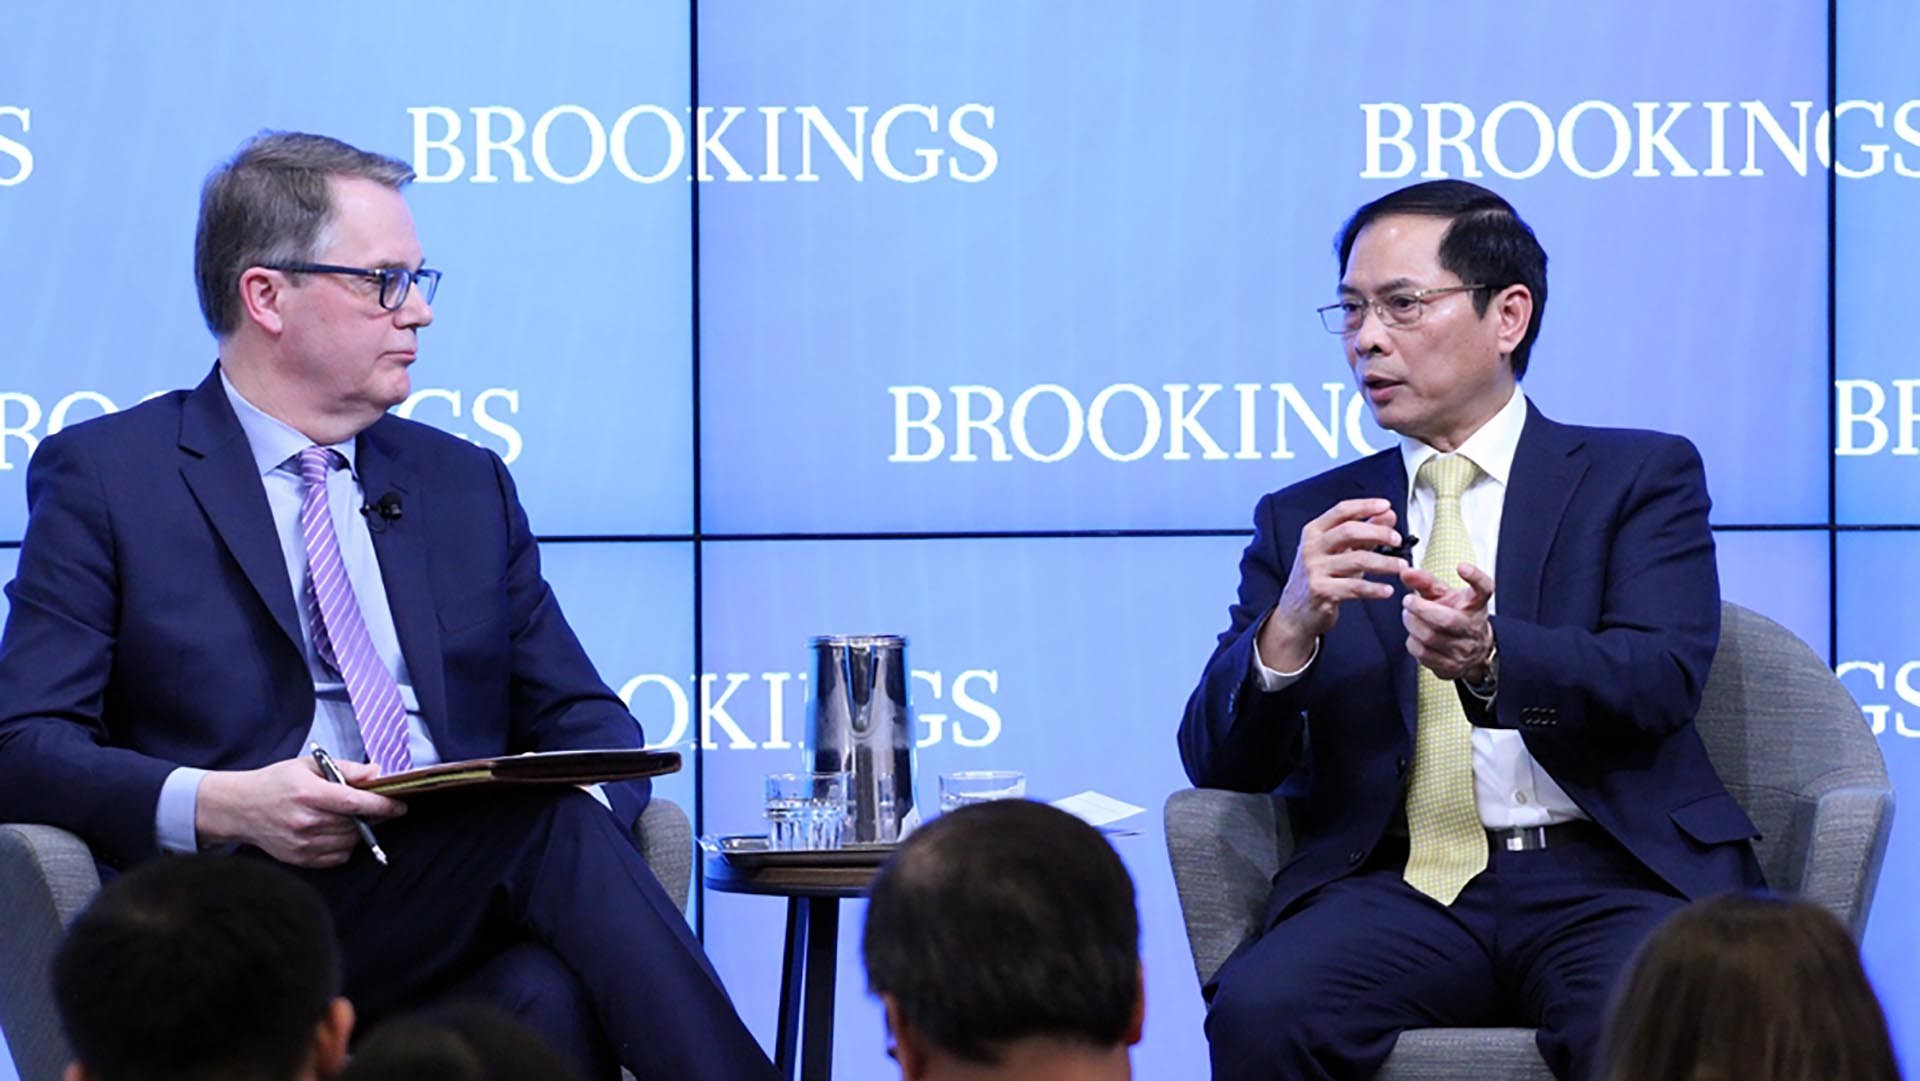 Bộ trưởng Ngoại giao Bùi Thanh Sơn dự và phát biểu tại tọa đàm về quan hệ Việt Nam - Hoa Kỳ tại Viện Brookings, ngày 25/3. (Nguồn: Viện Brookings)